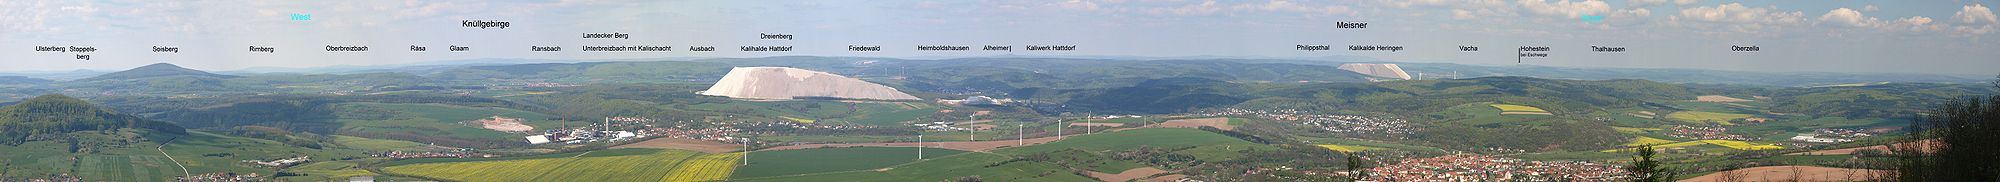 Die von den Abraumhalden der K+S geprägte Landschaft um Heringen vom Öchsenberg aus fotografiert